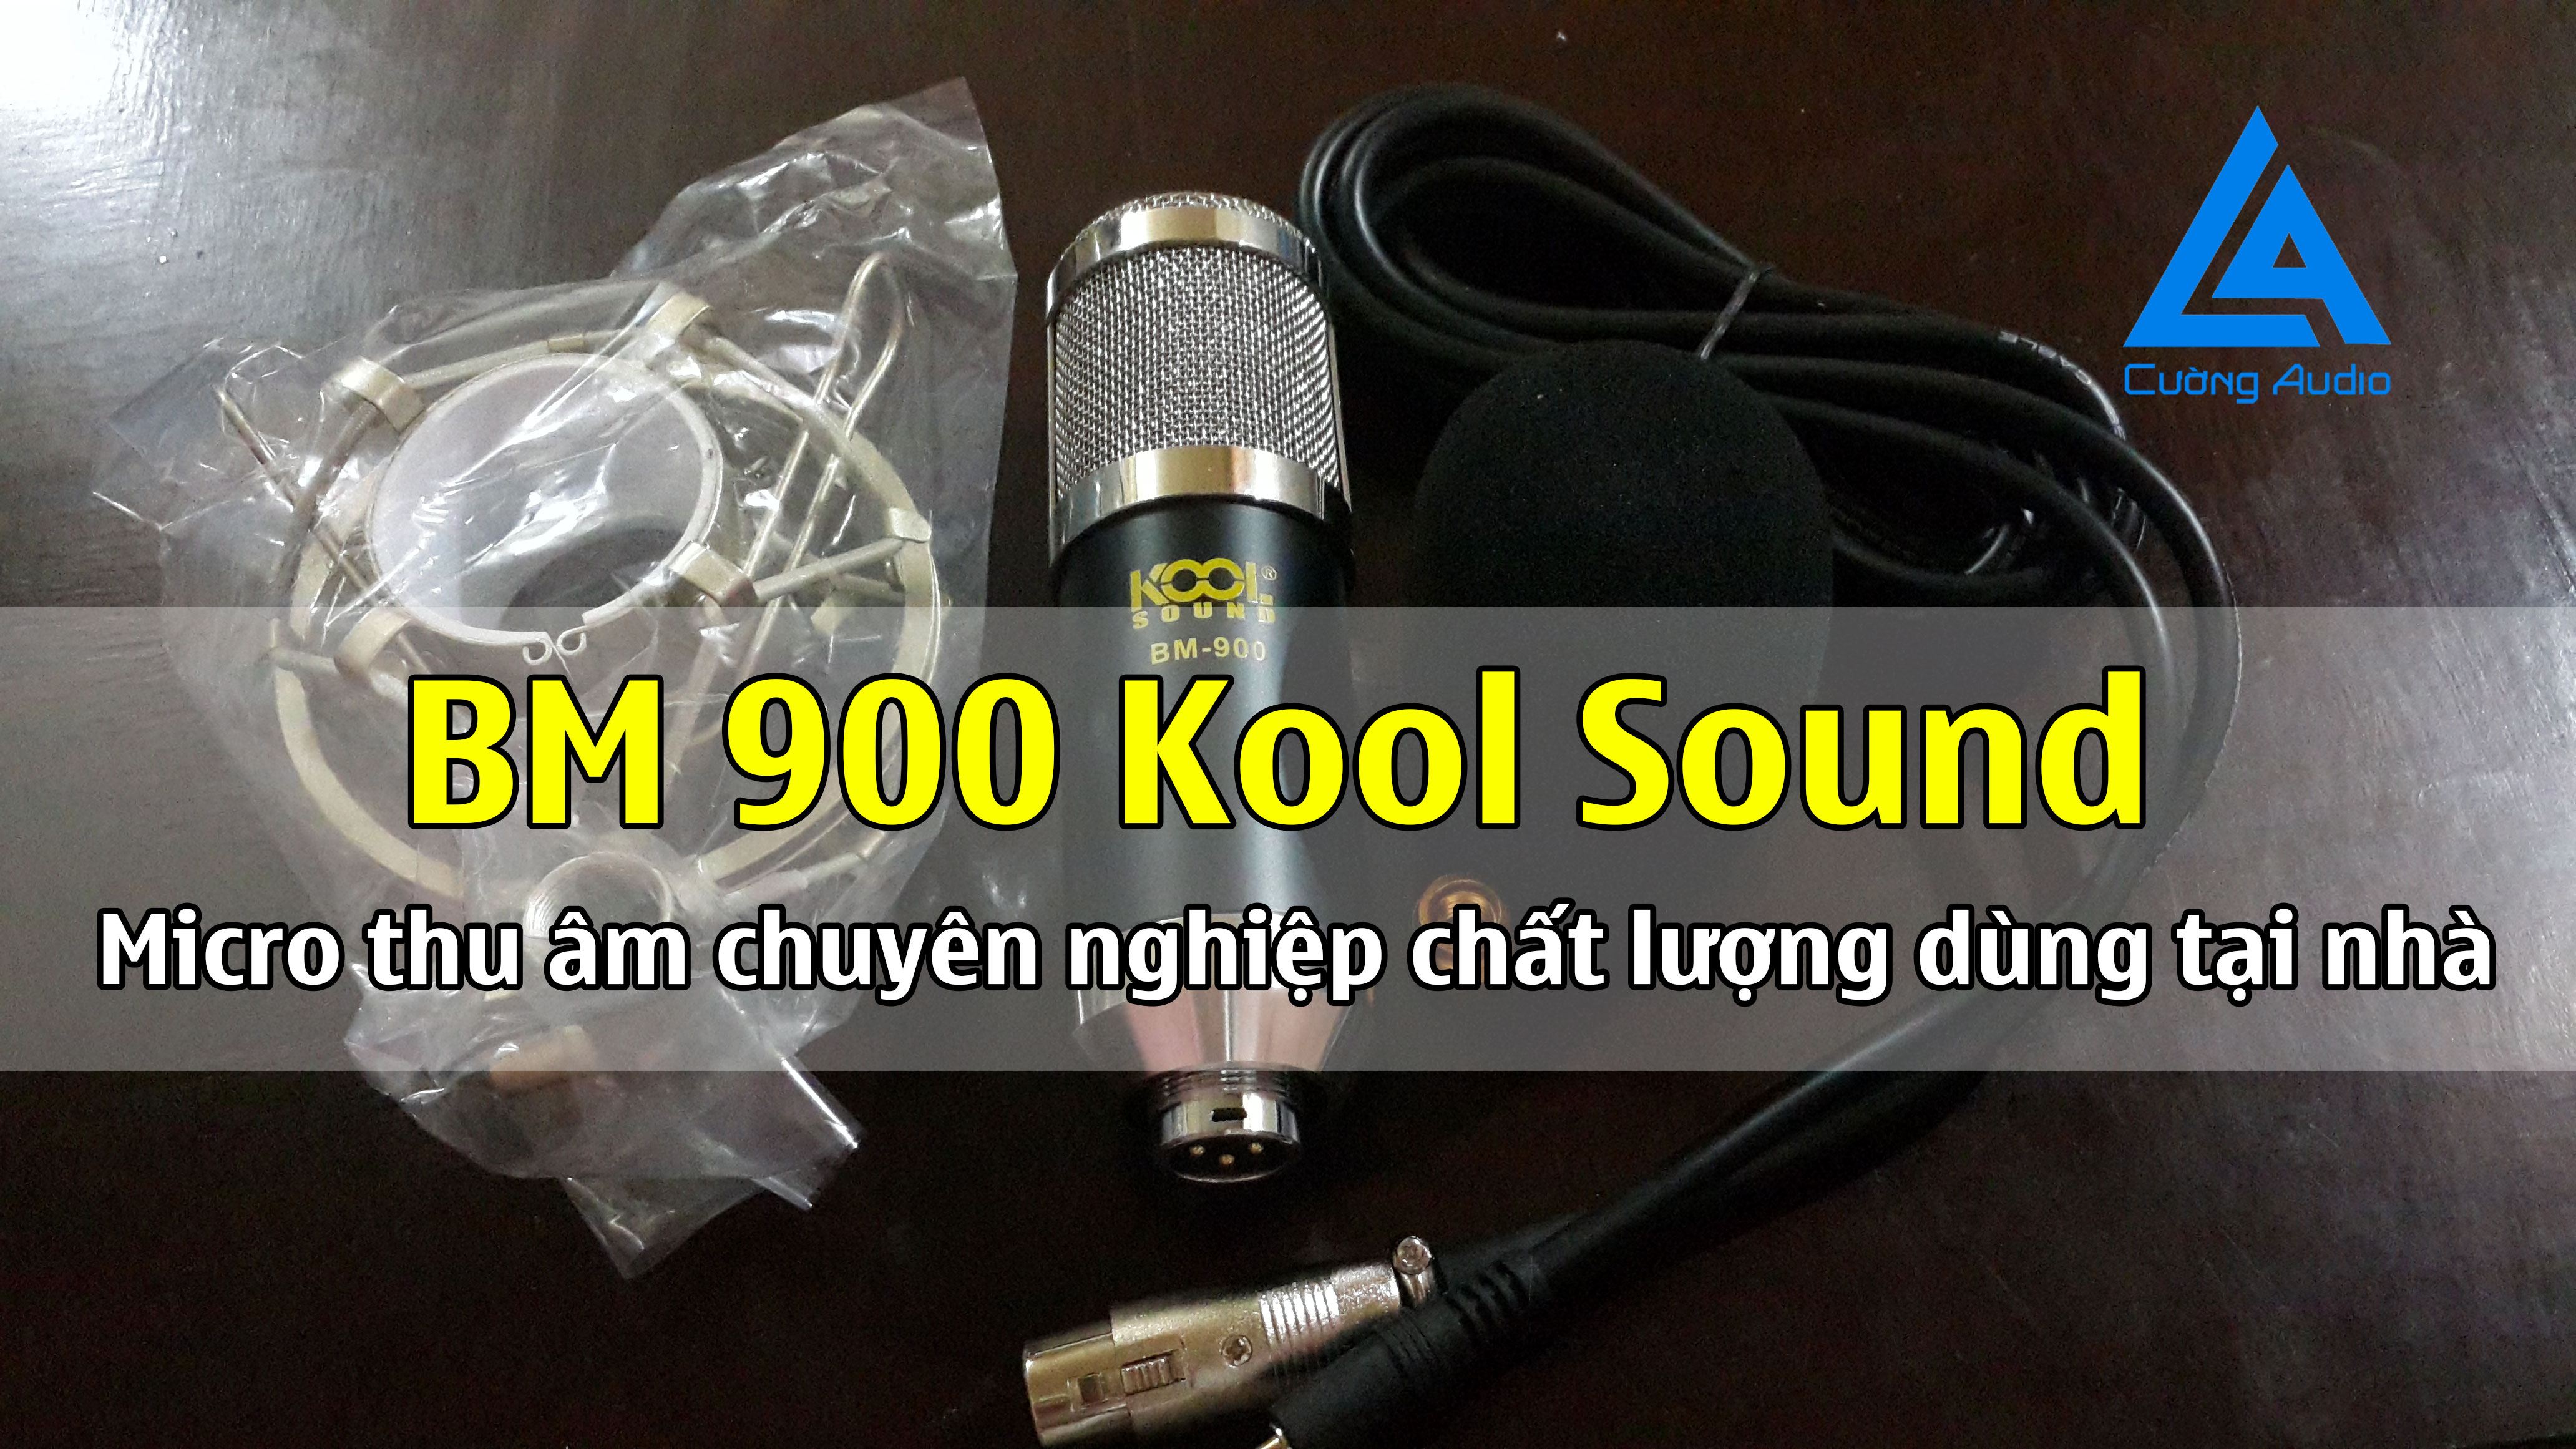 Micro thu âm BM 900 Kool Sound chuyên nghiệp chất lượng dùng tại nhà